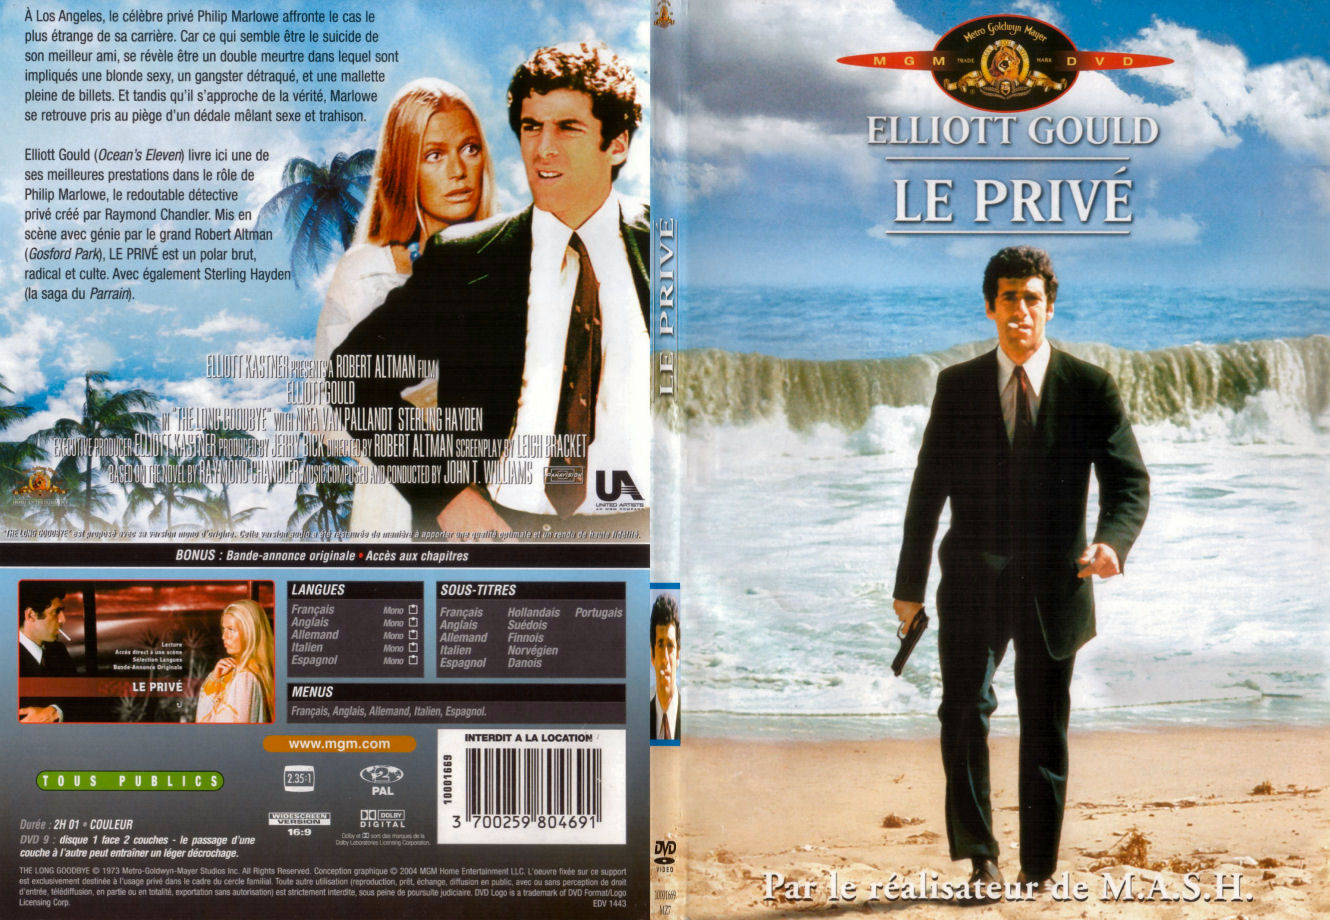 Jaquette DVD Le priv - SLIM